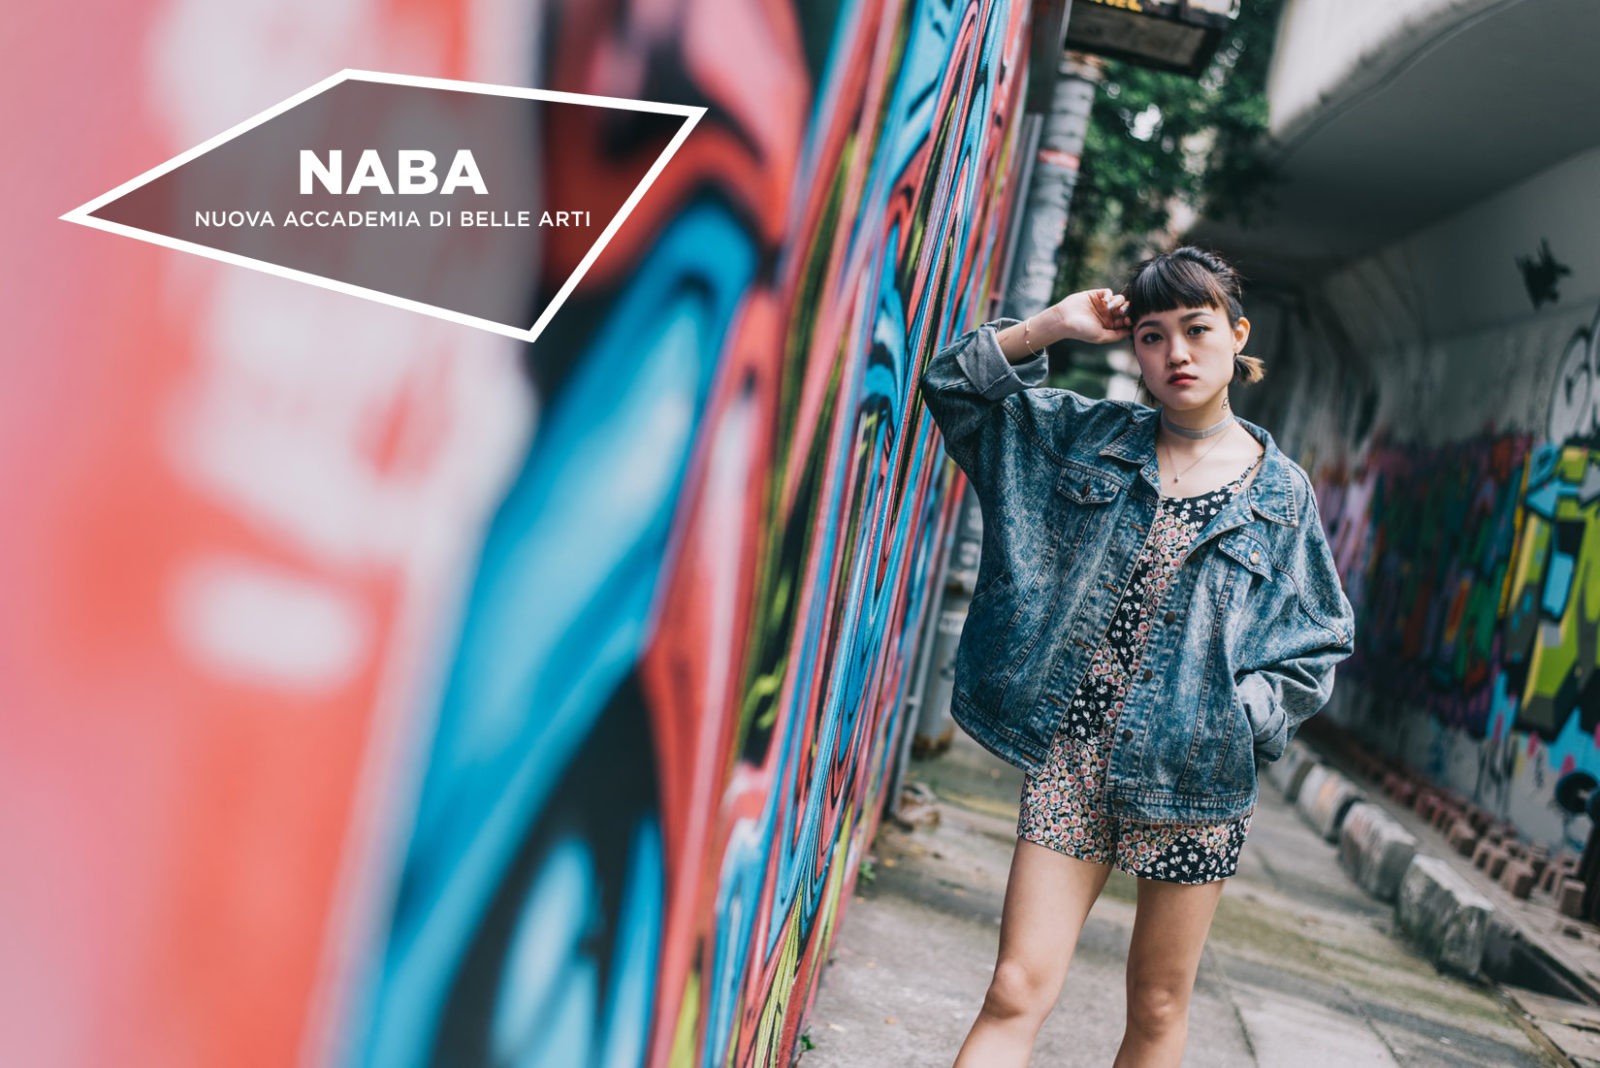 NABA: Бакалавриат по модному дизайну